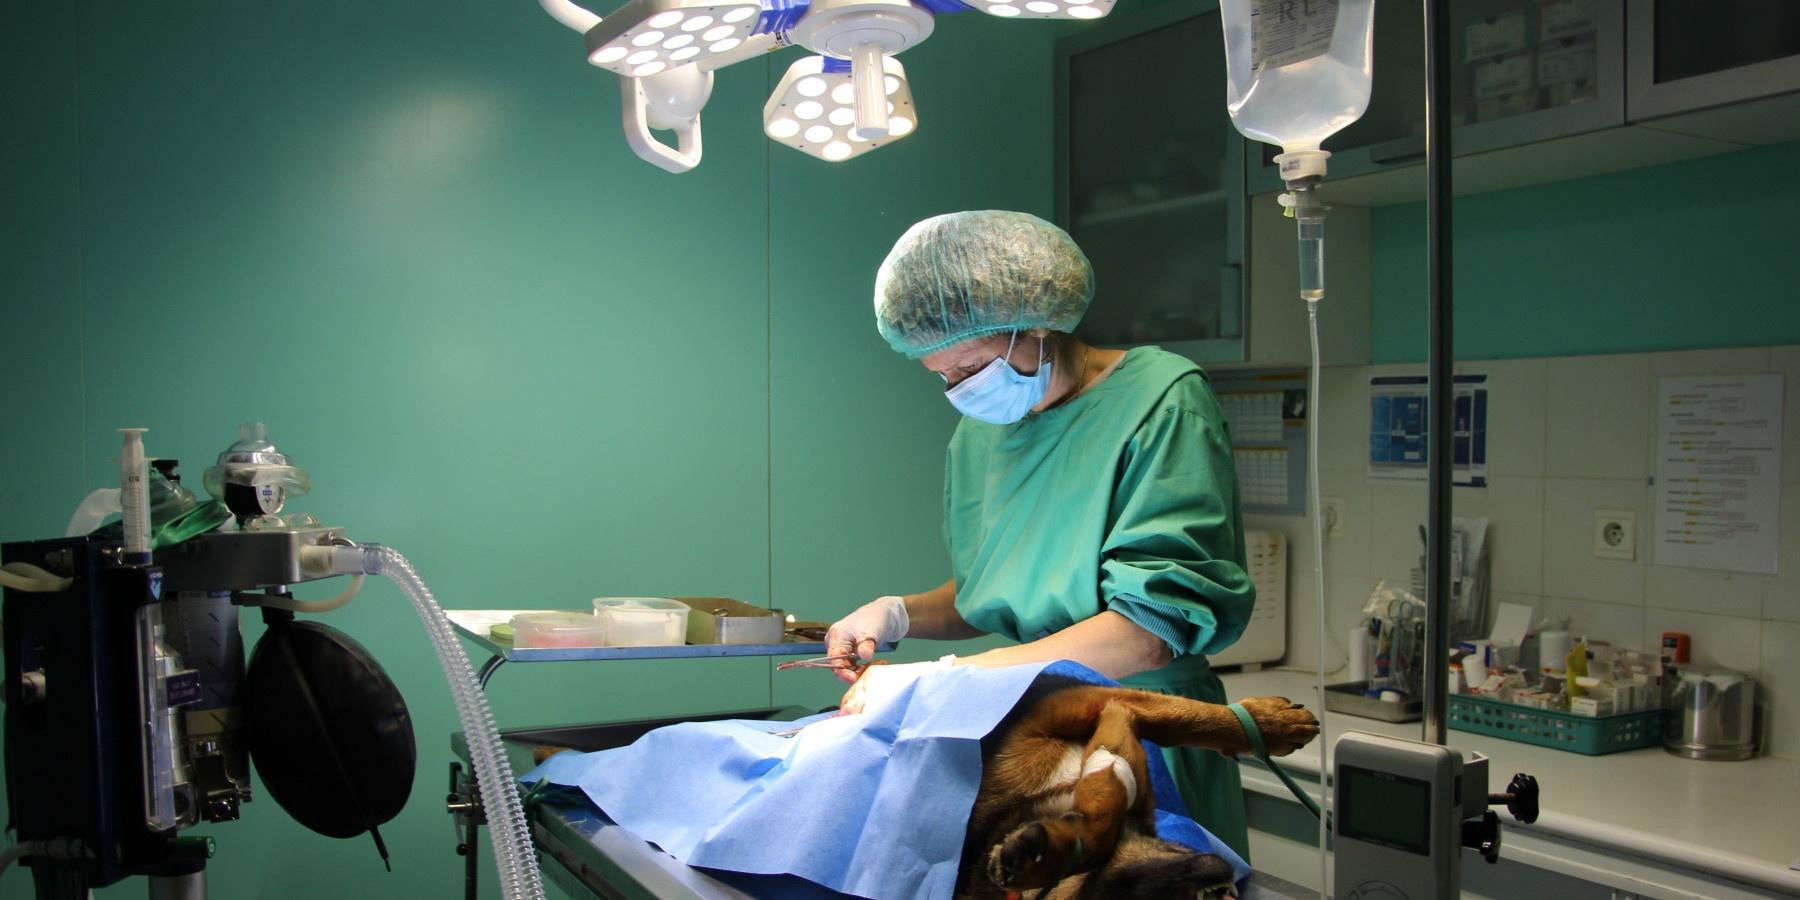 Clinique Vétérinaire Grand Angles - Sevetys Les Angles